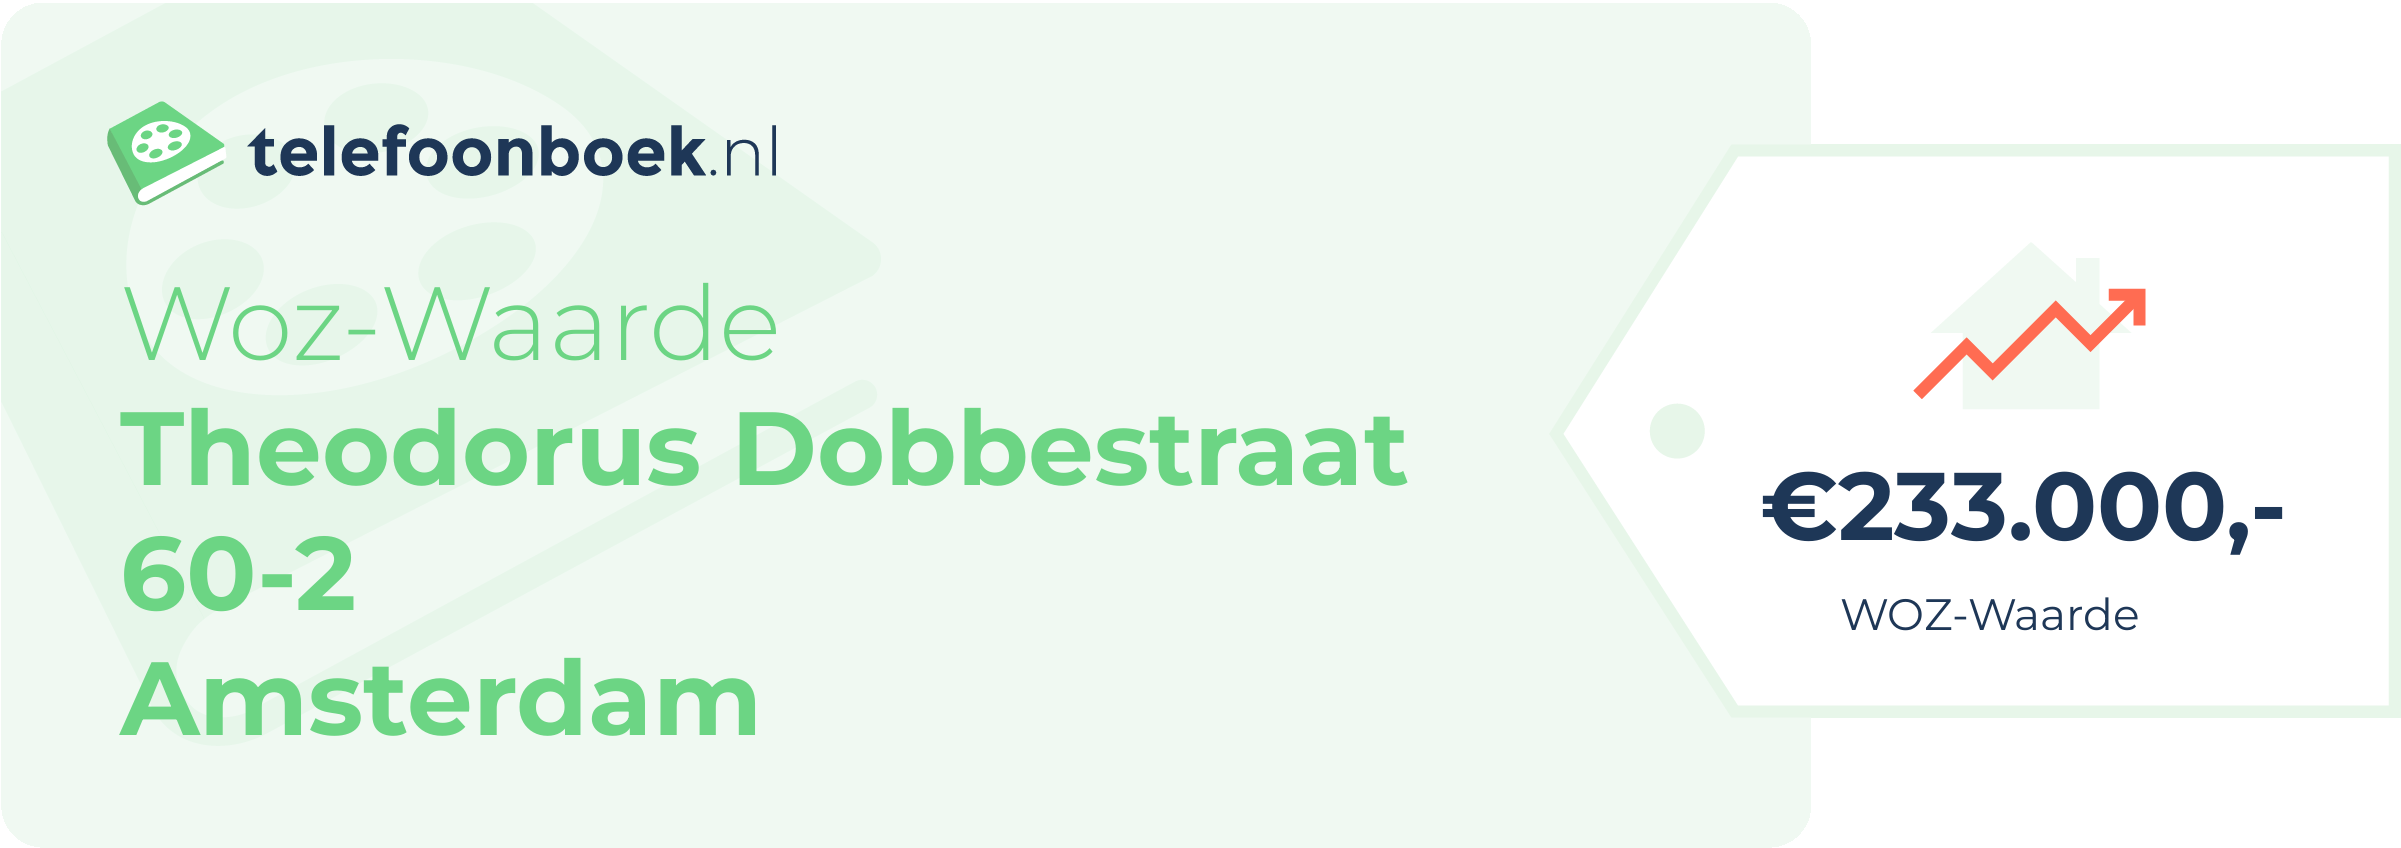 WOZ-waarde Theodorus Dobbestraat 60-2 Amsterdam